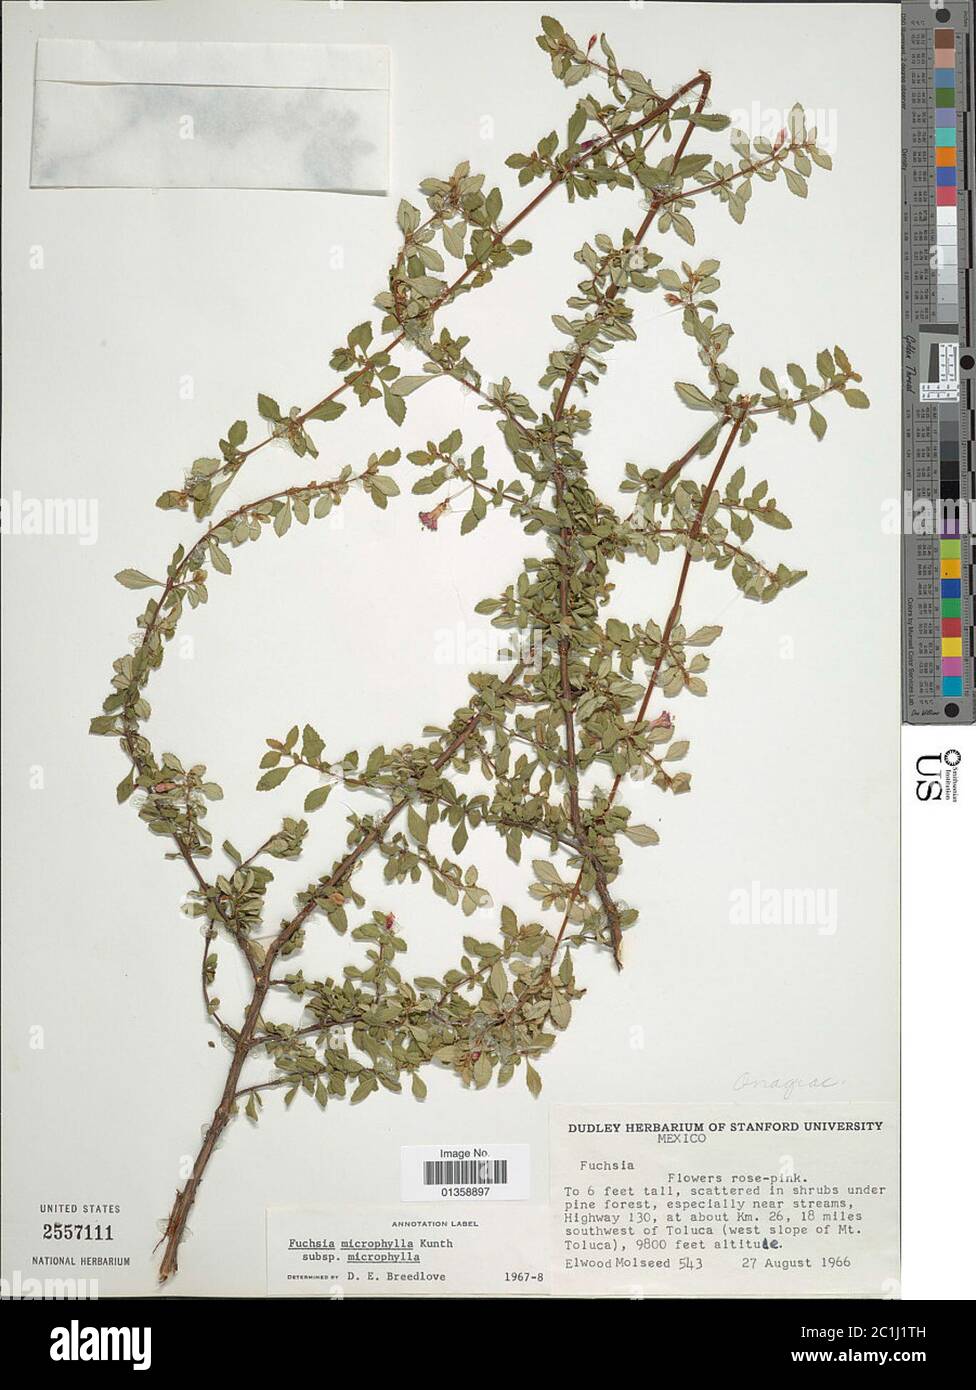 Fuchsia microphylla subsp quercetorum Breedlove Stock Photo